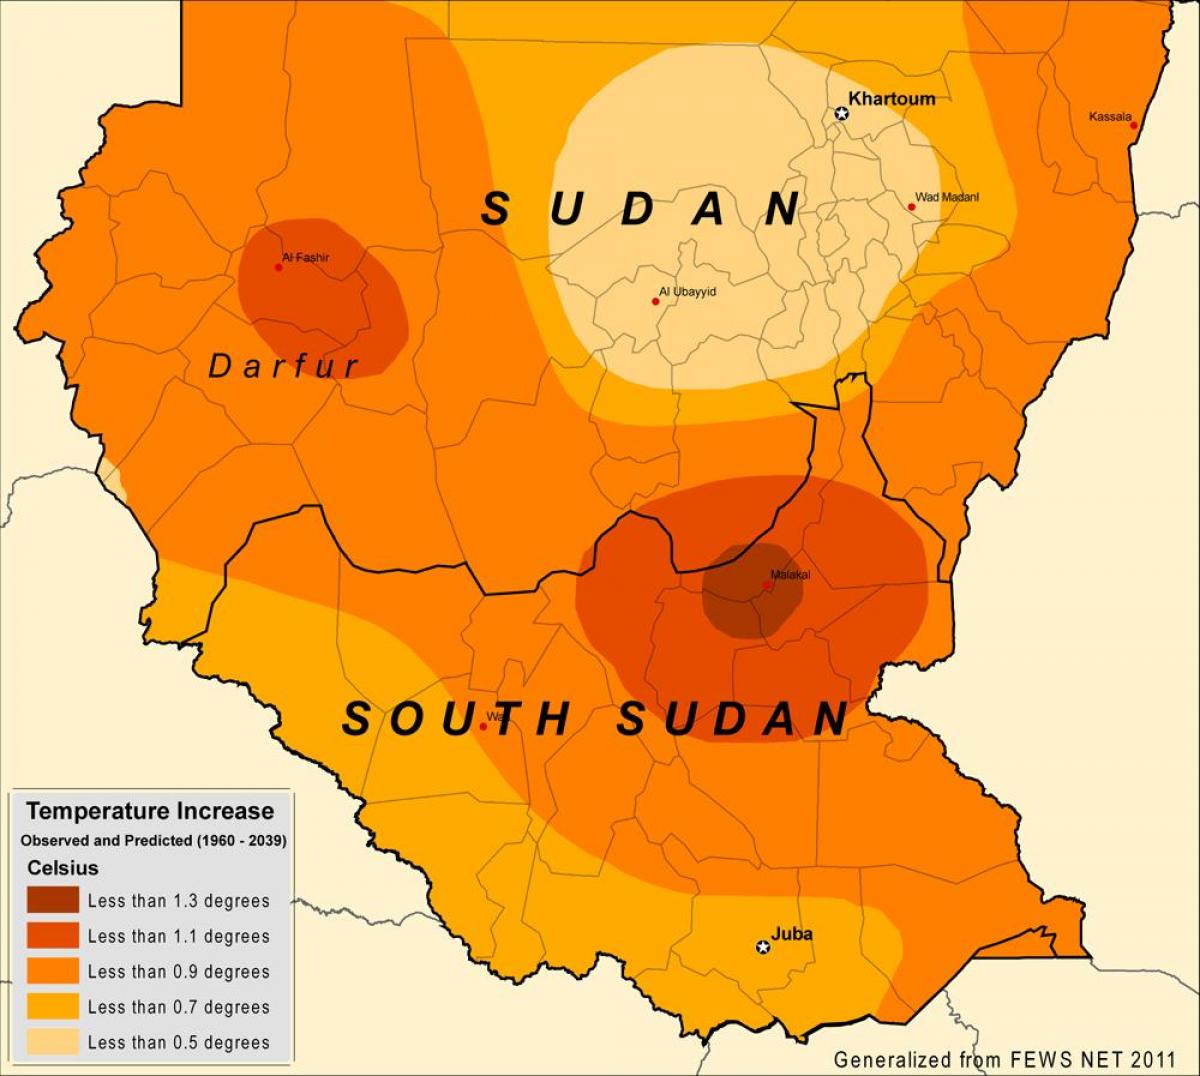 Mapi Sudana klime